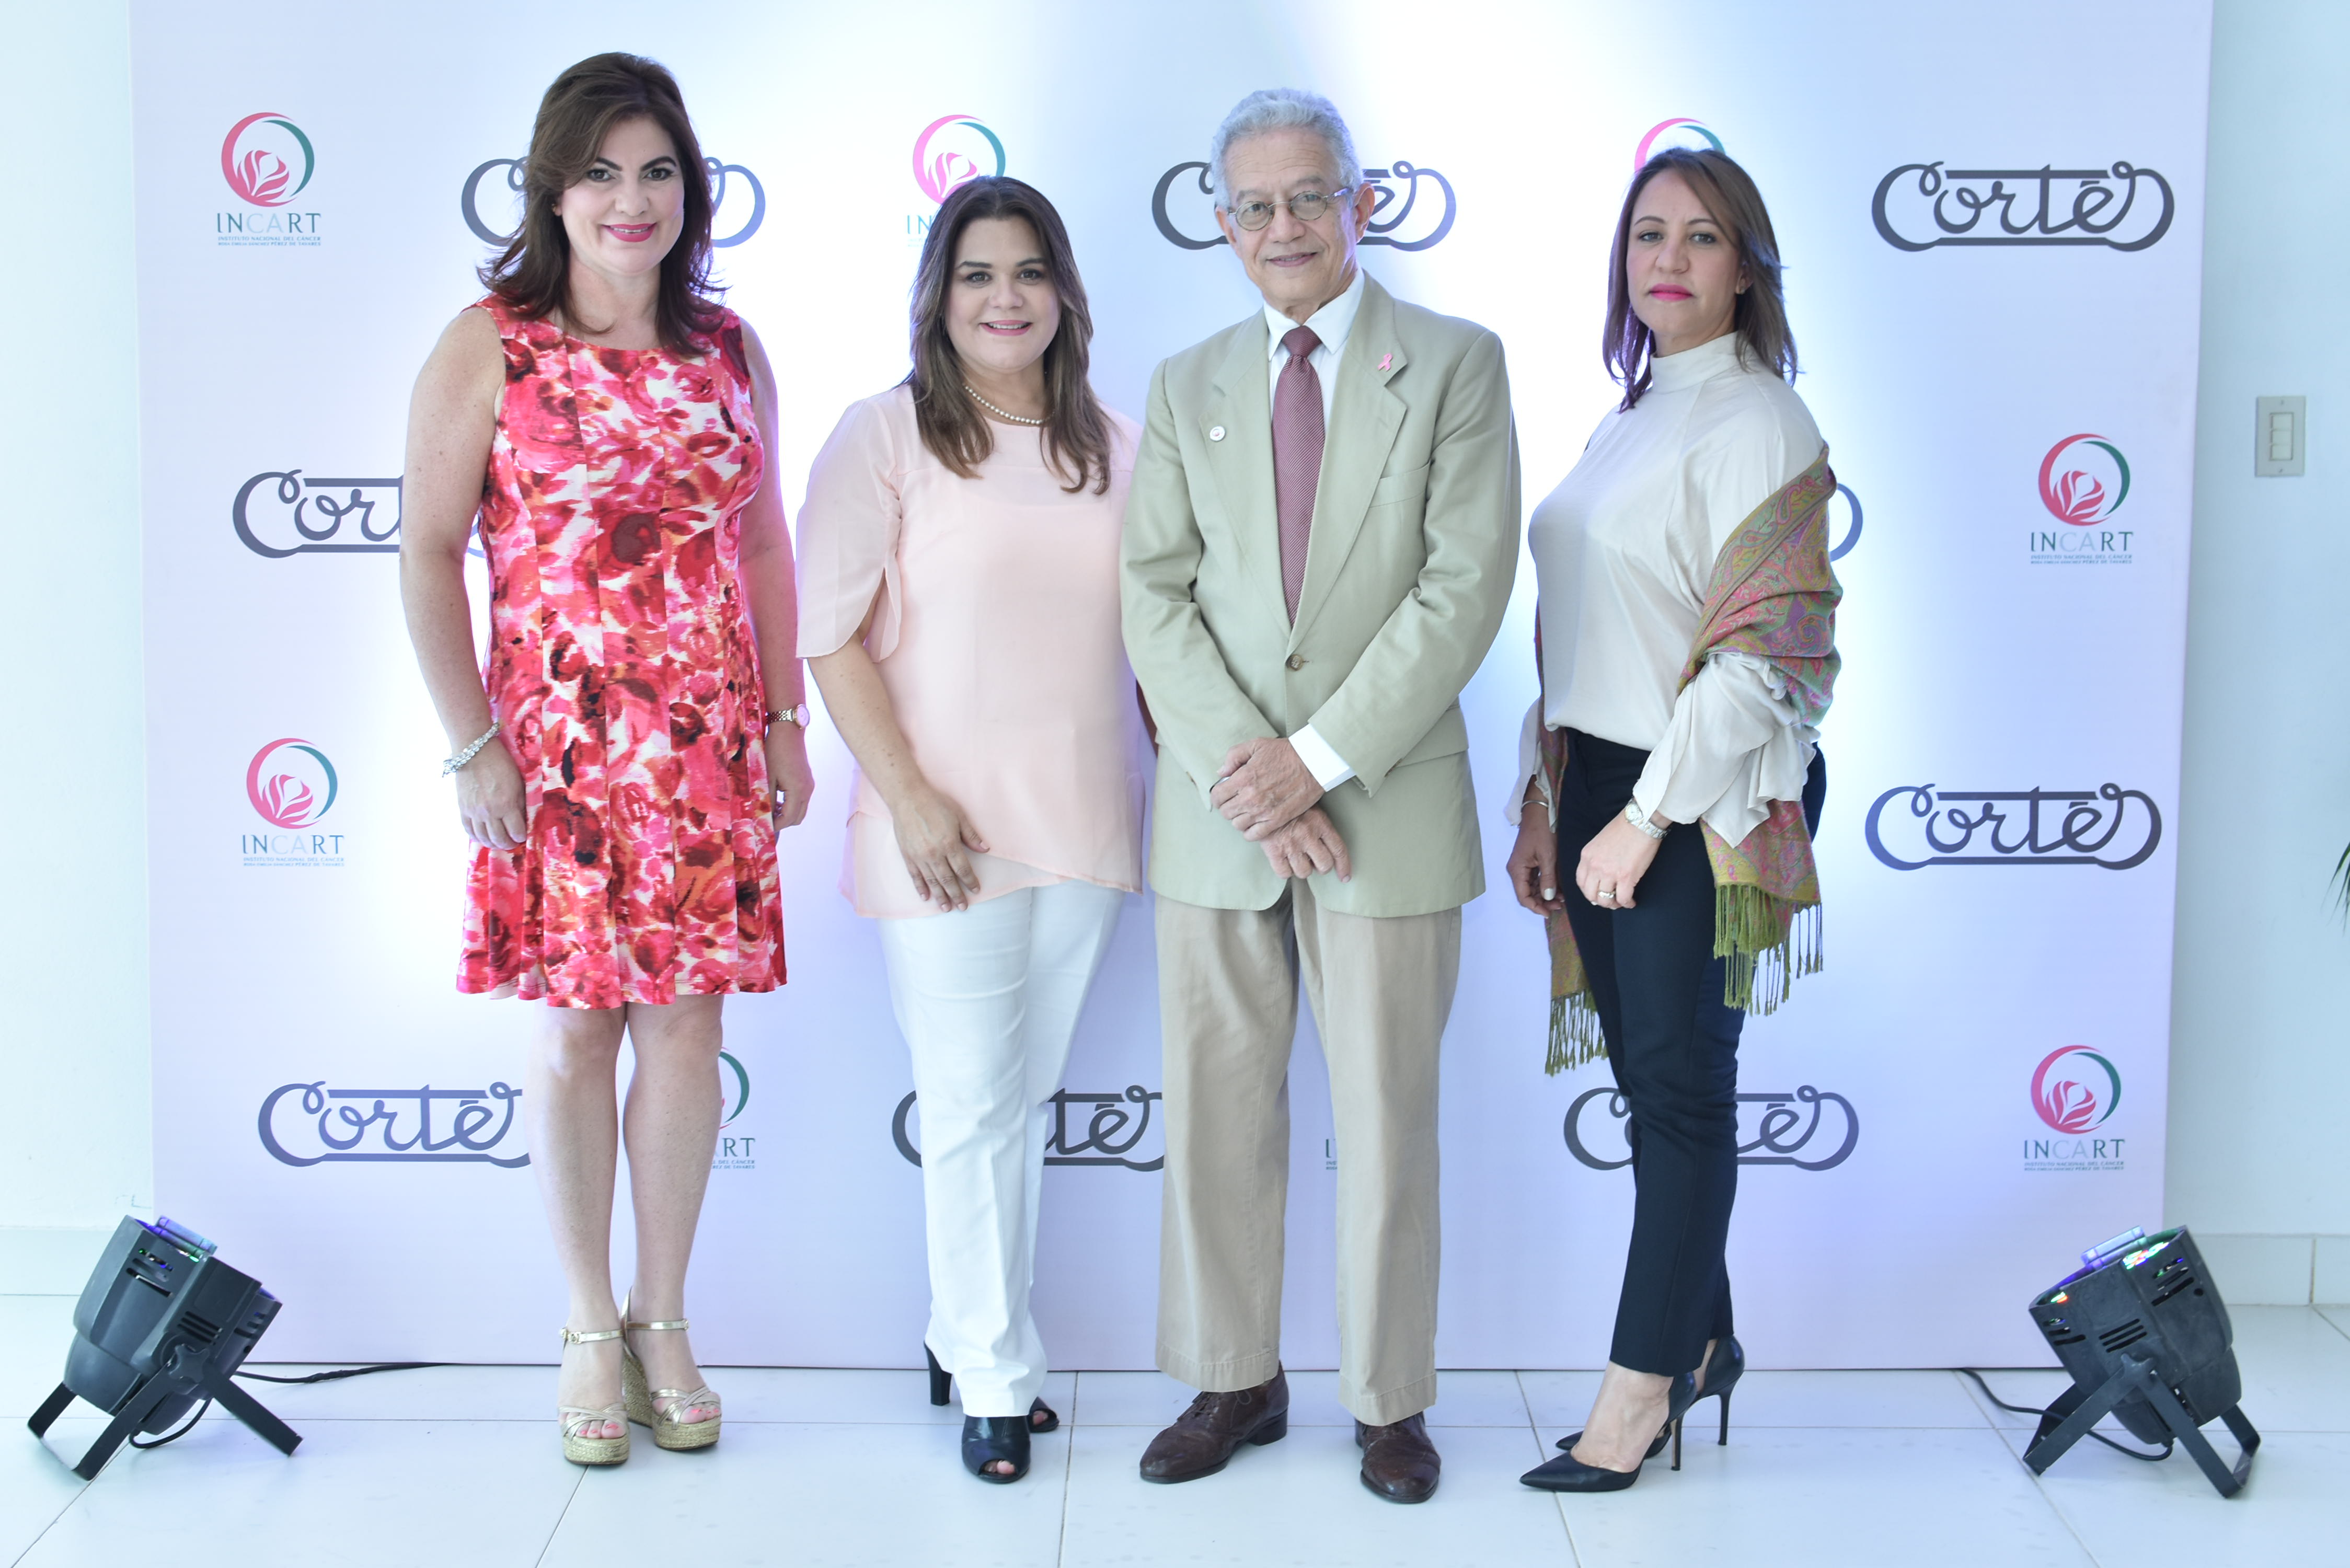  Cortés Hermanos presenta campaña en apoyo al cáncer de mama